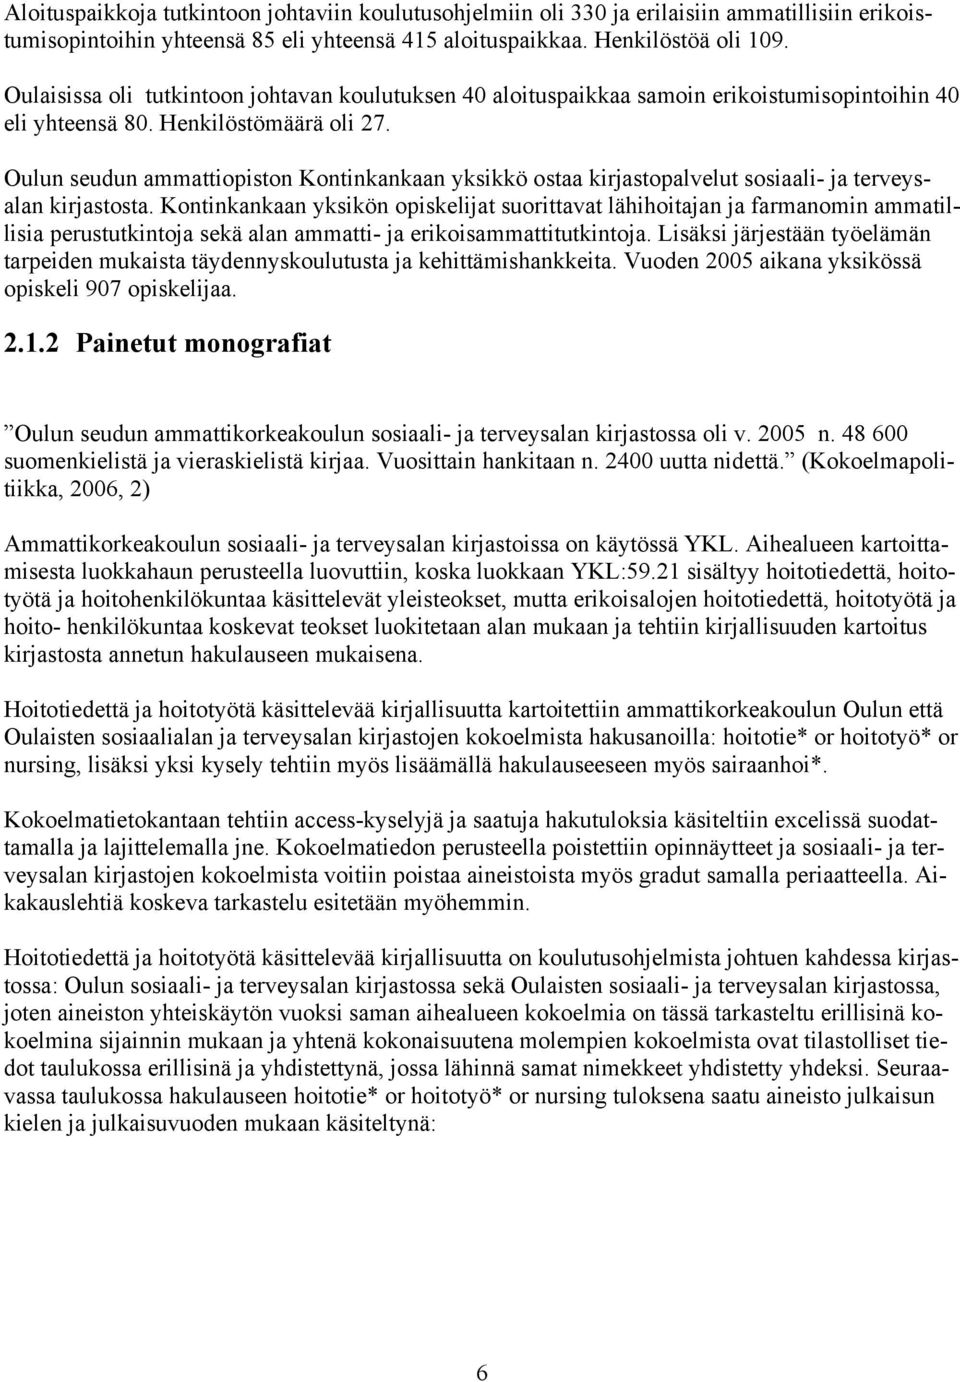 Oulun seudun ammattiopiston Kontinkankaan yksikkö ostaa kirjastopalvelut sosiaali- ja terveysalan kirjastosta.